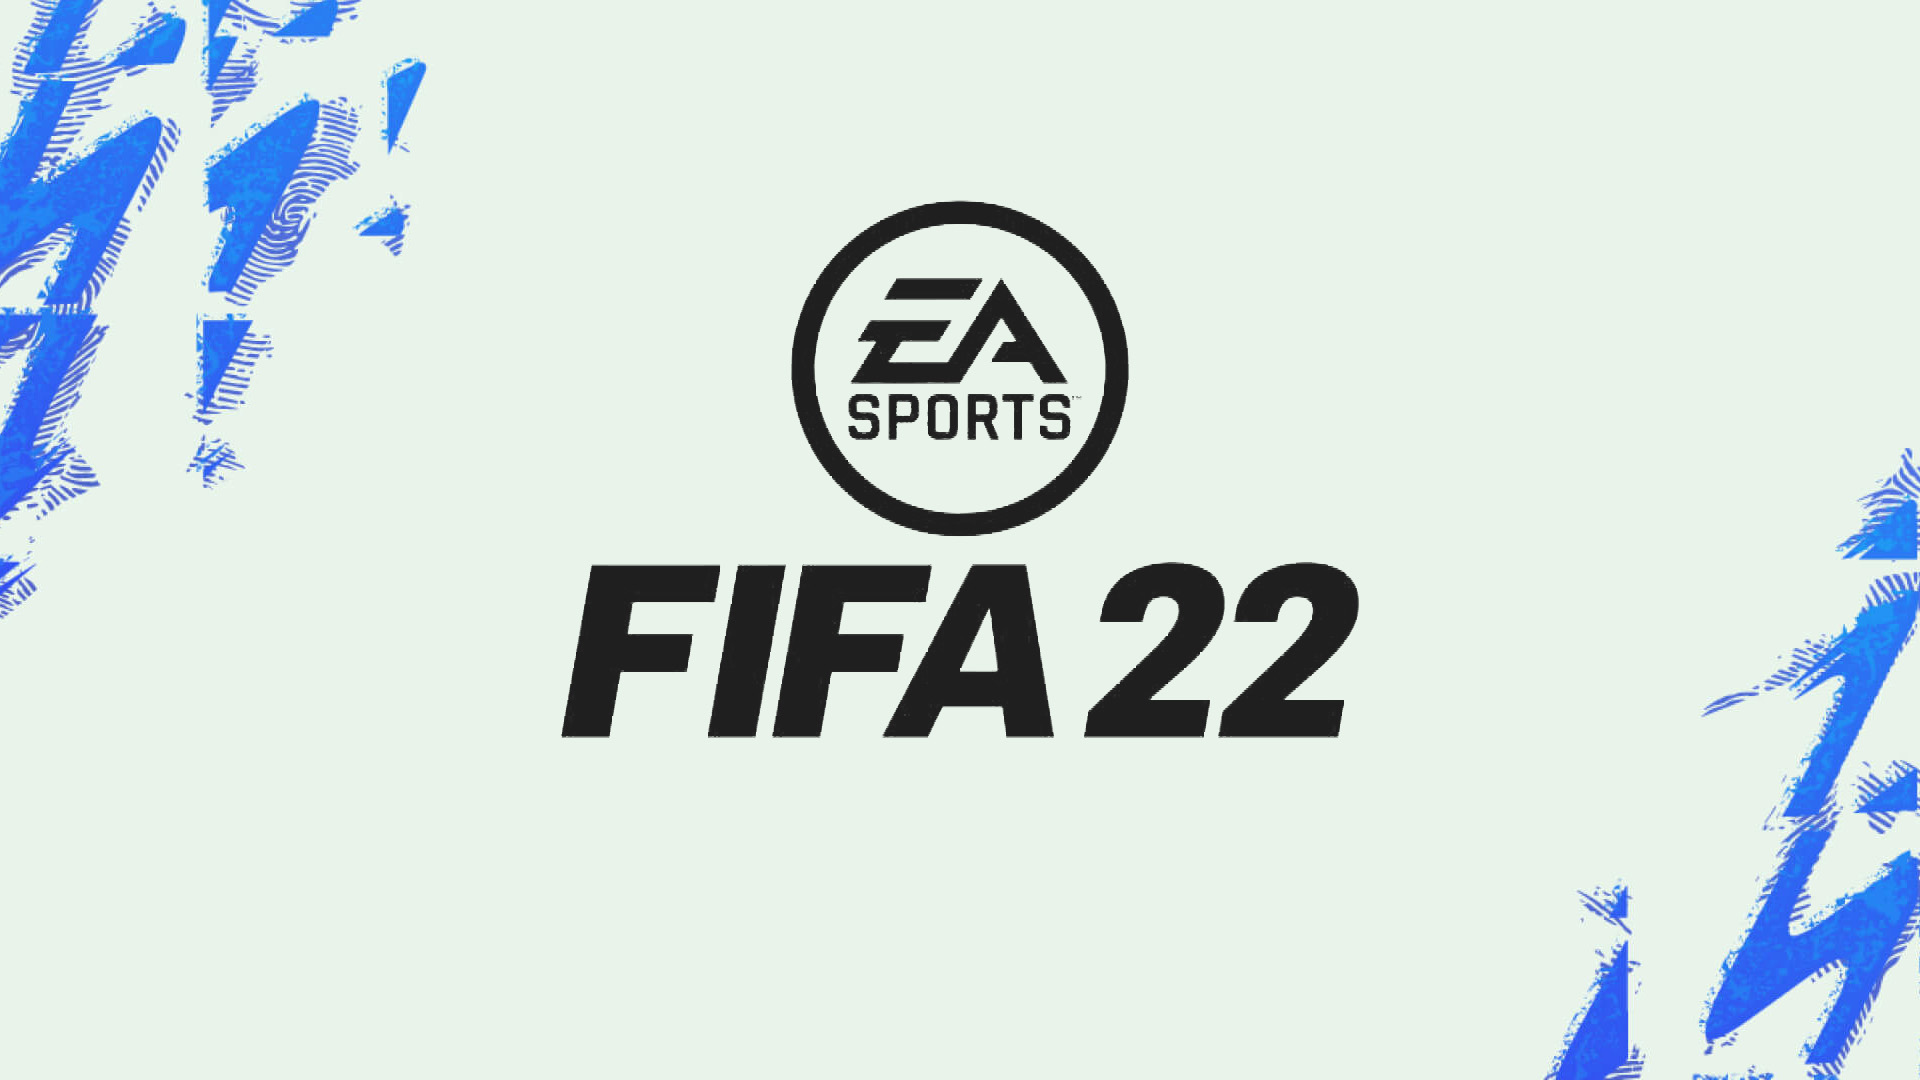 requisitos para FIFA 22 pc 